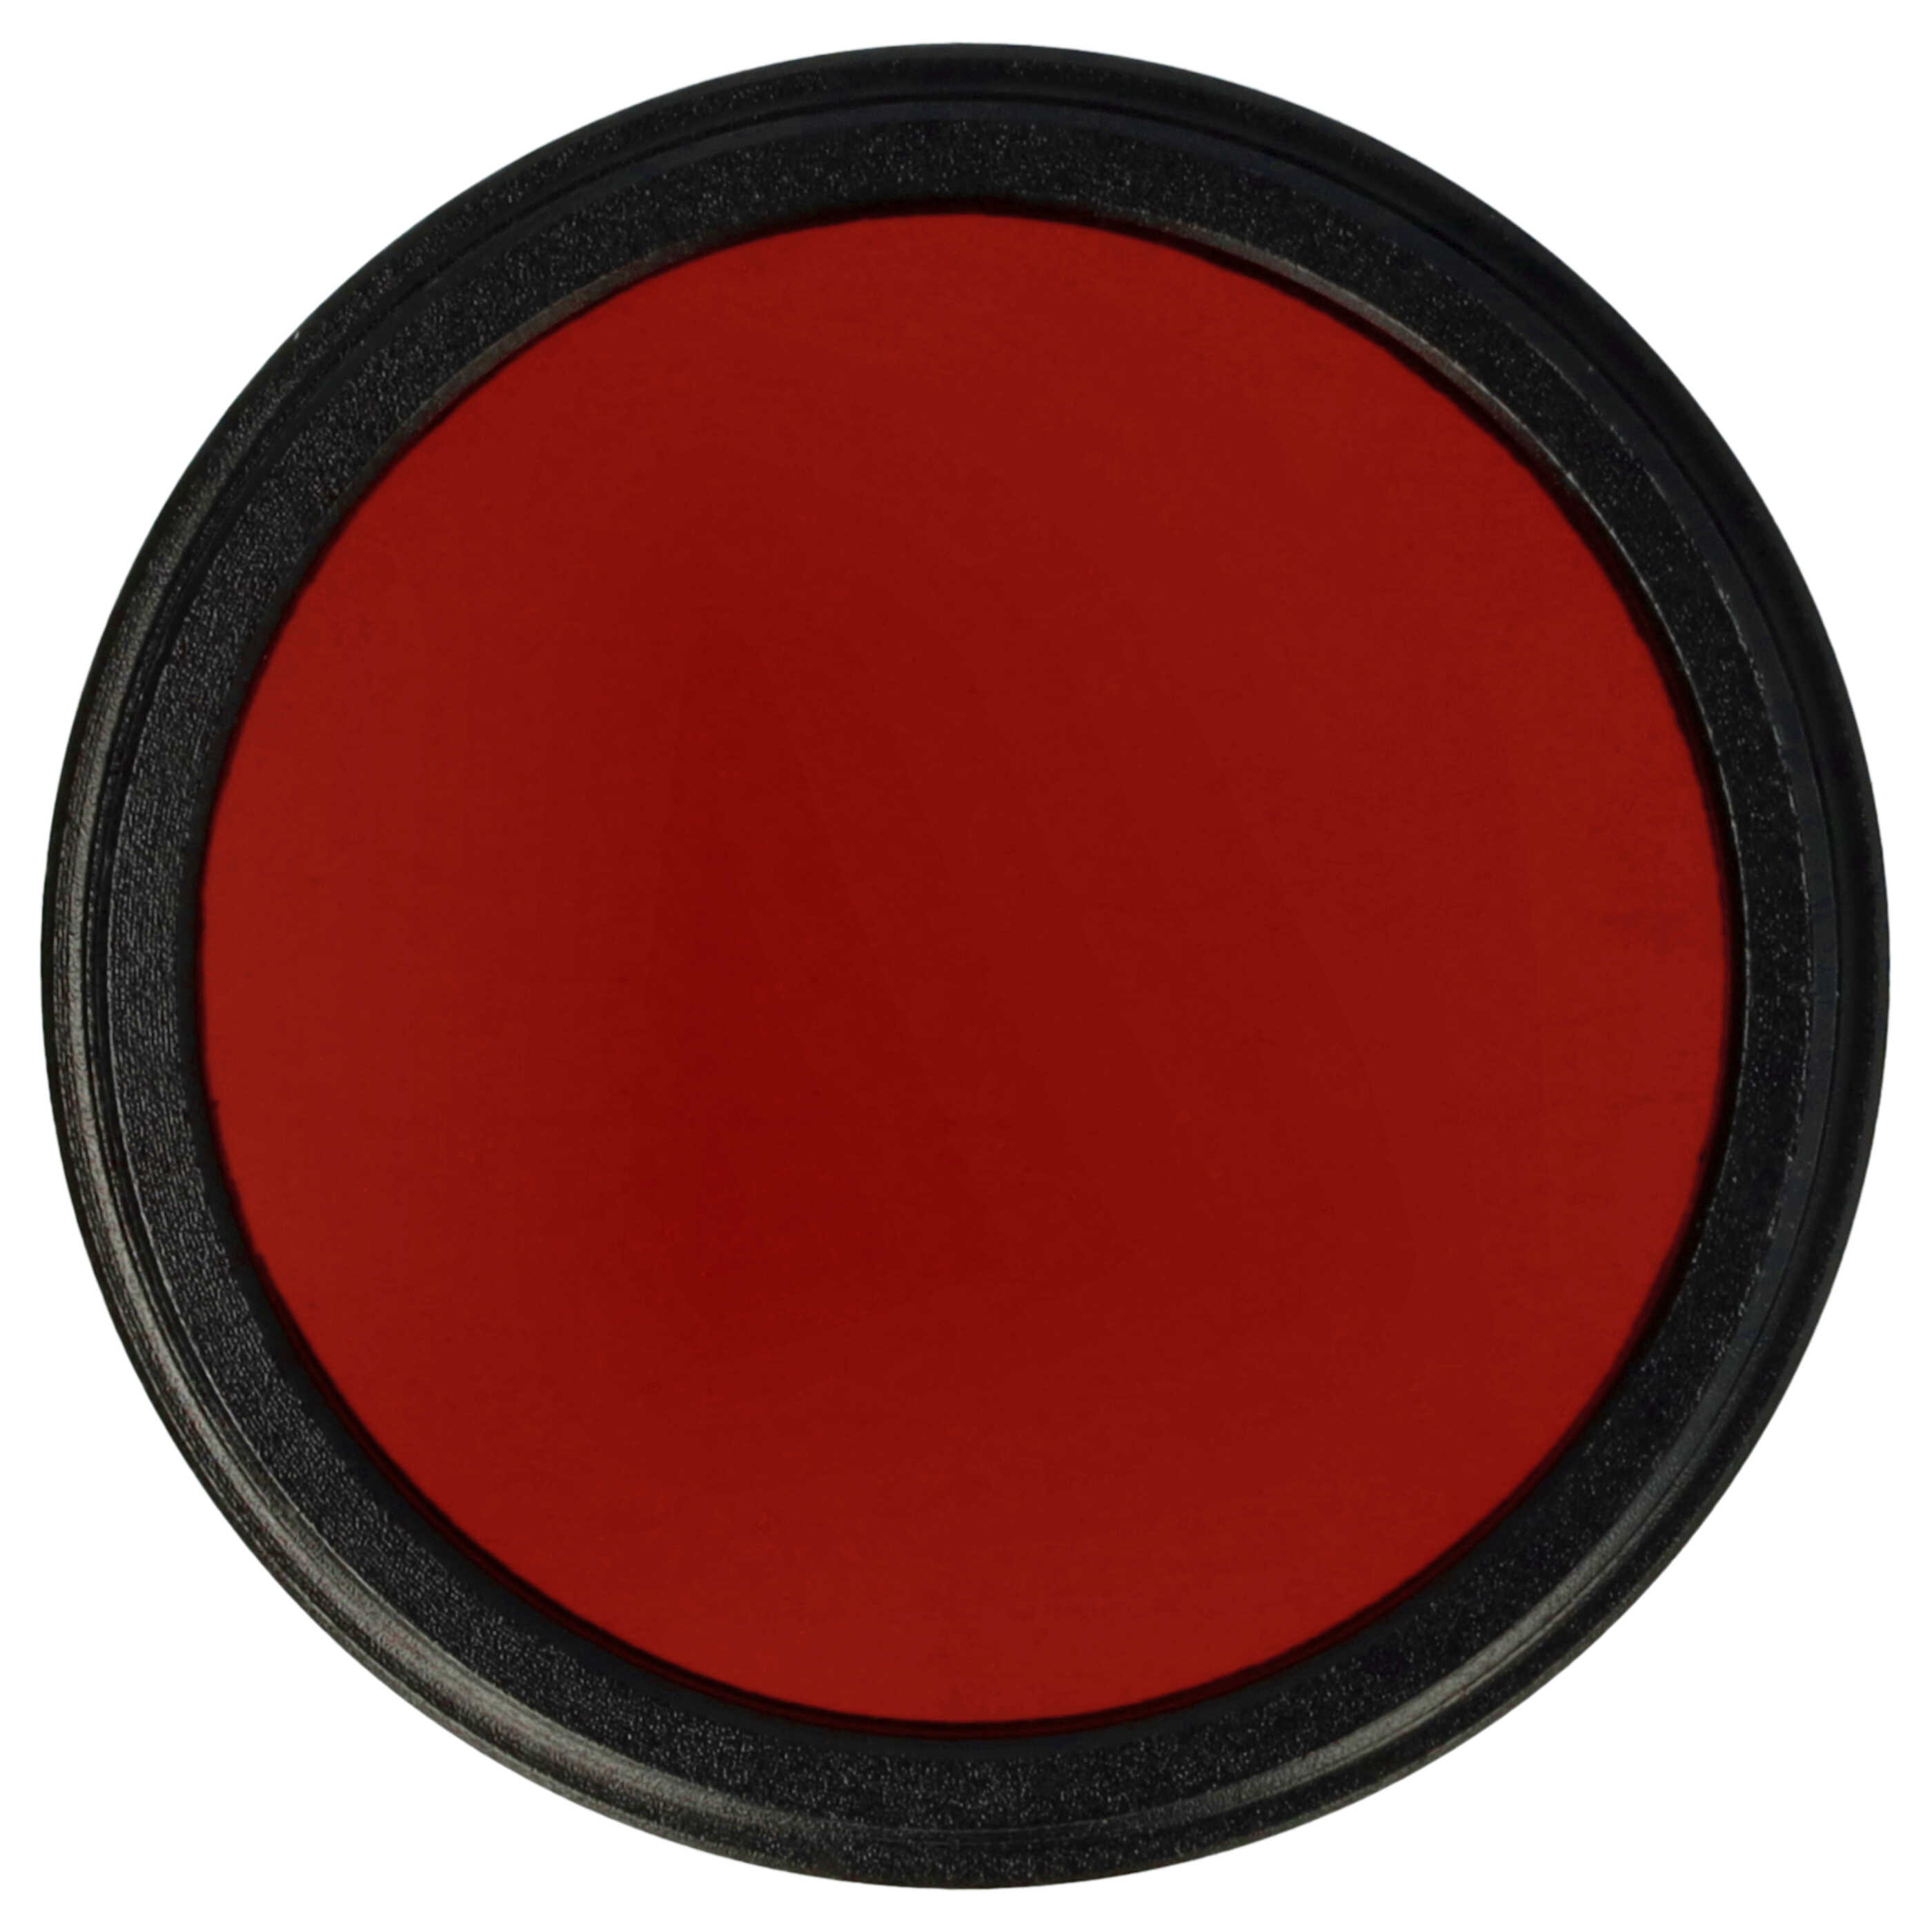 Farbfilter rot passend für Kamera Objektive mit 37 mm Filtergewinde - Rotfilter